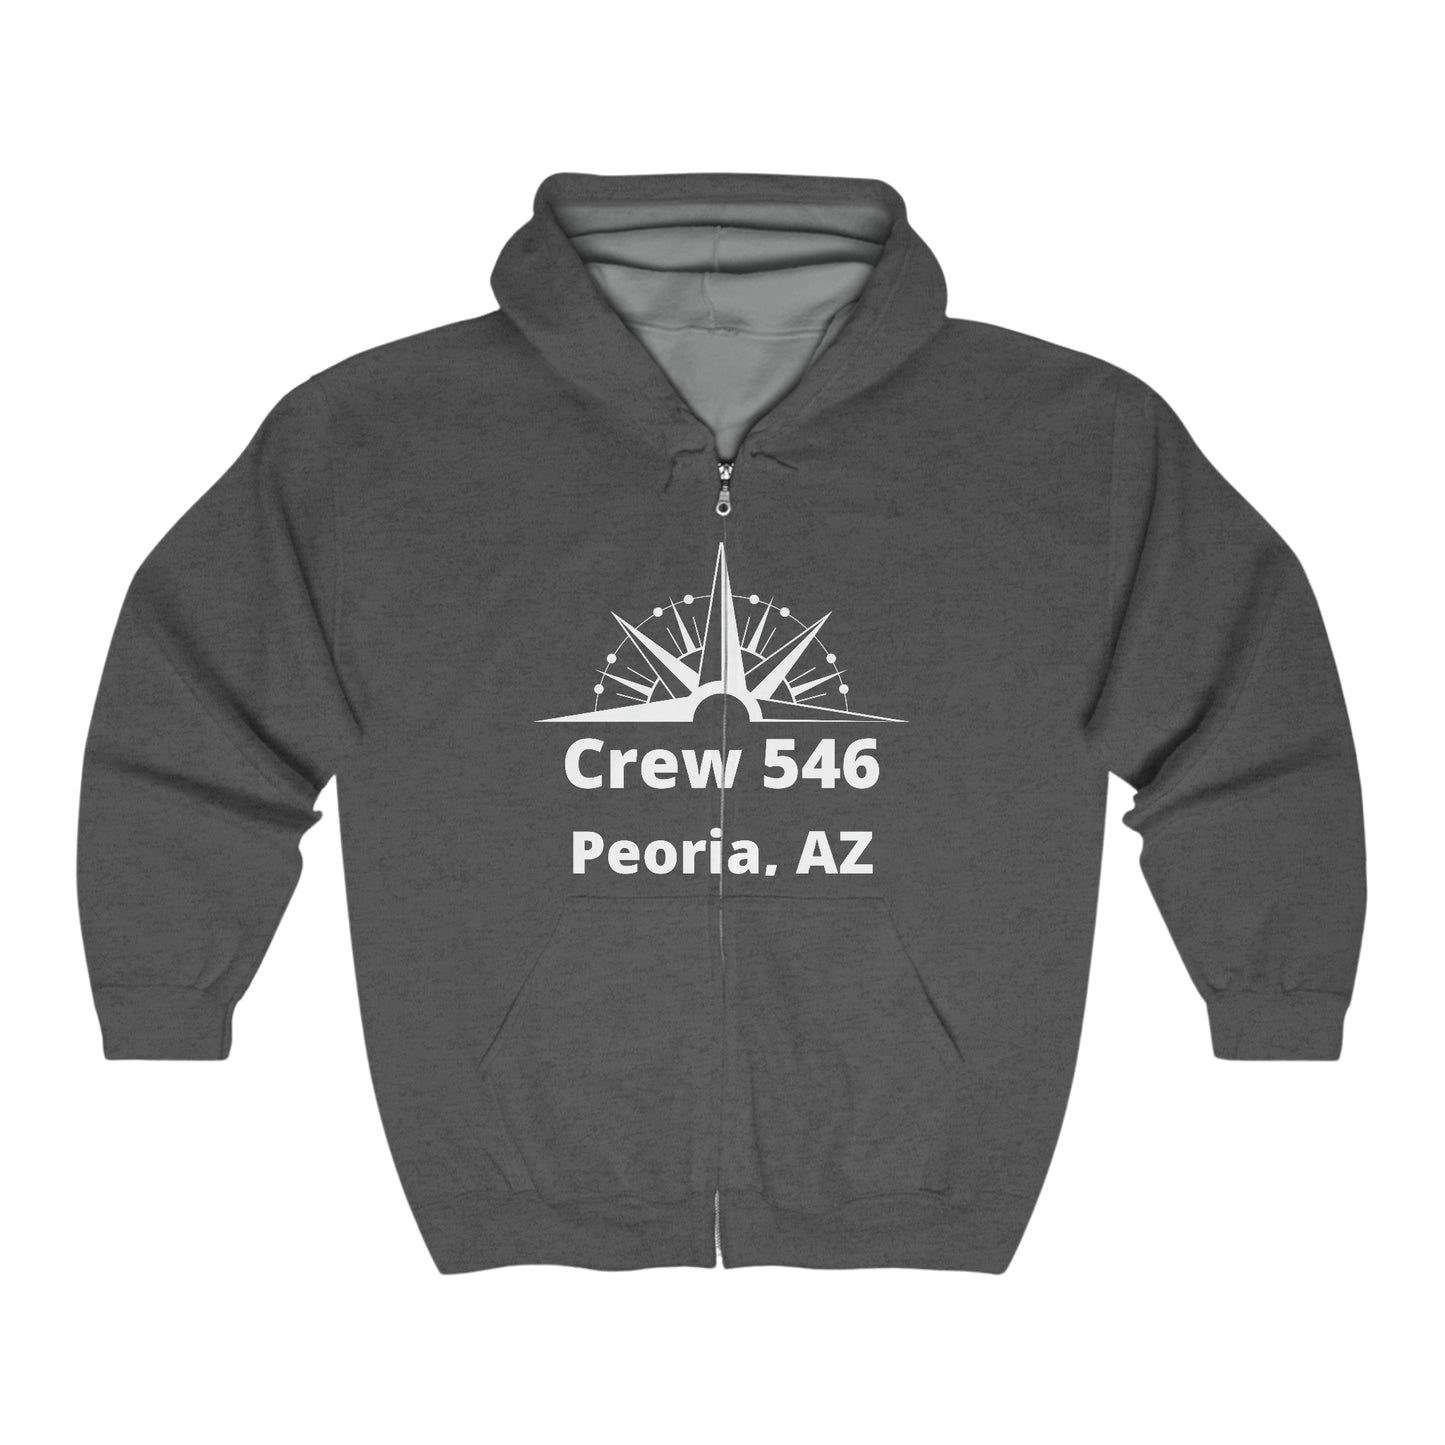 Crew 546 - Full Zip Hooded Sweatshirt